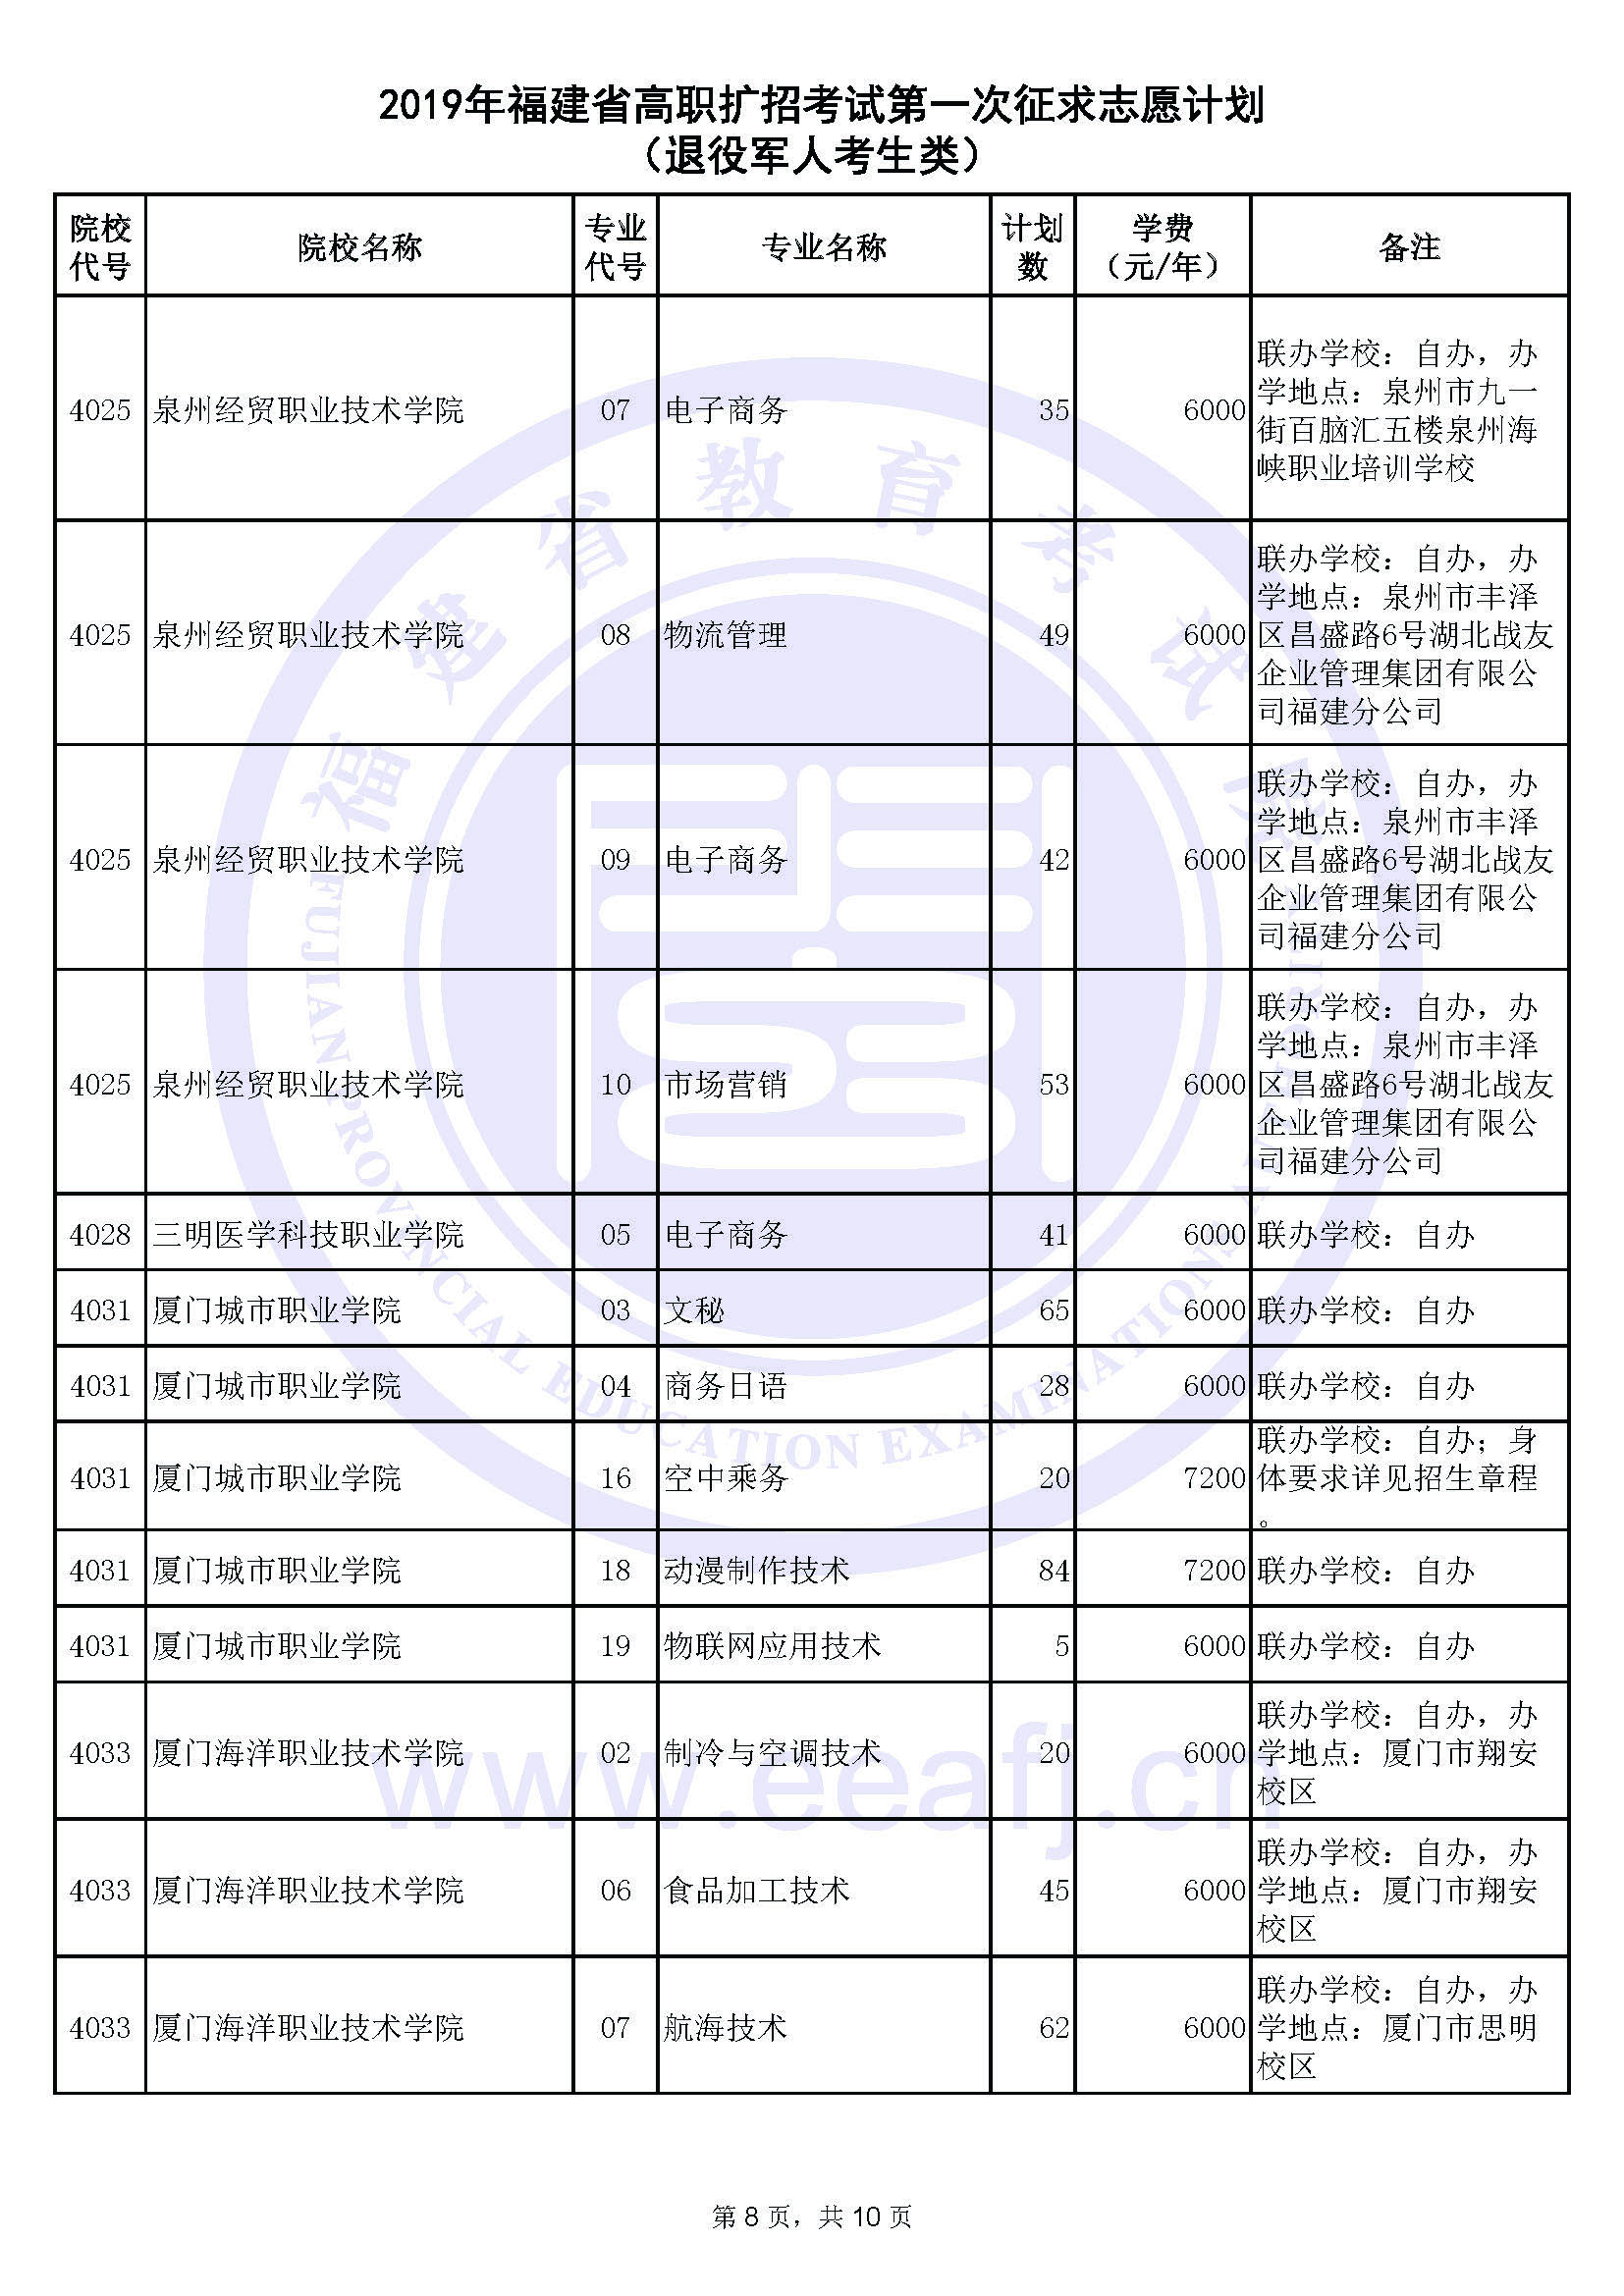 2019年福建省高职扩招考试第一次征求志愿计划